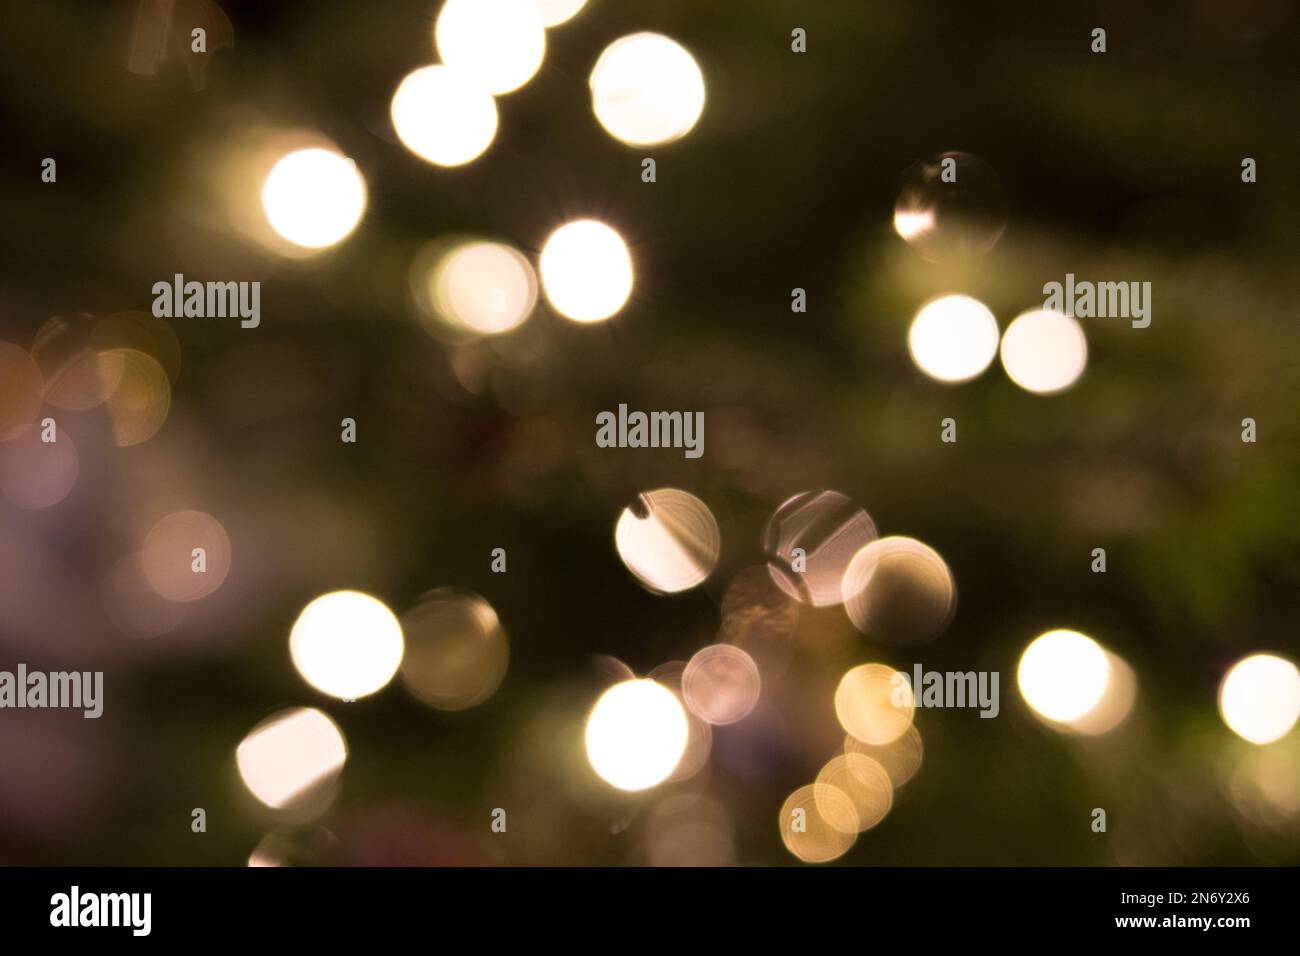 Christmas lights bokeh Stock Photo